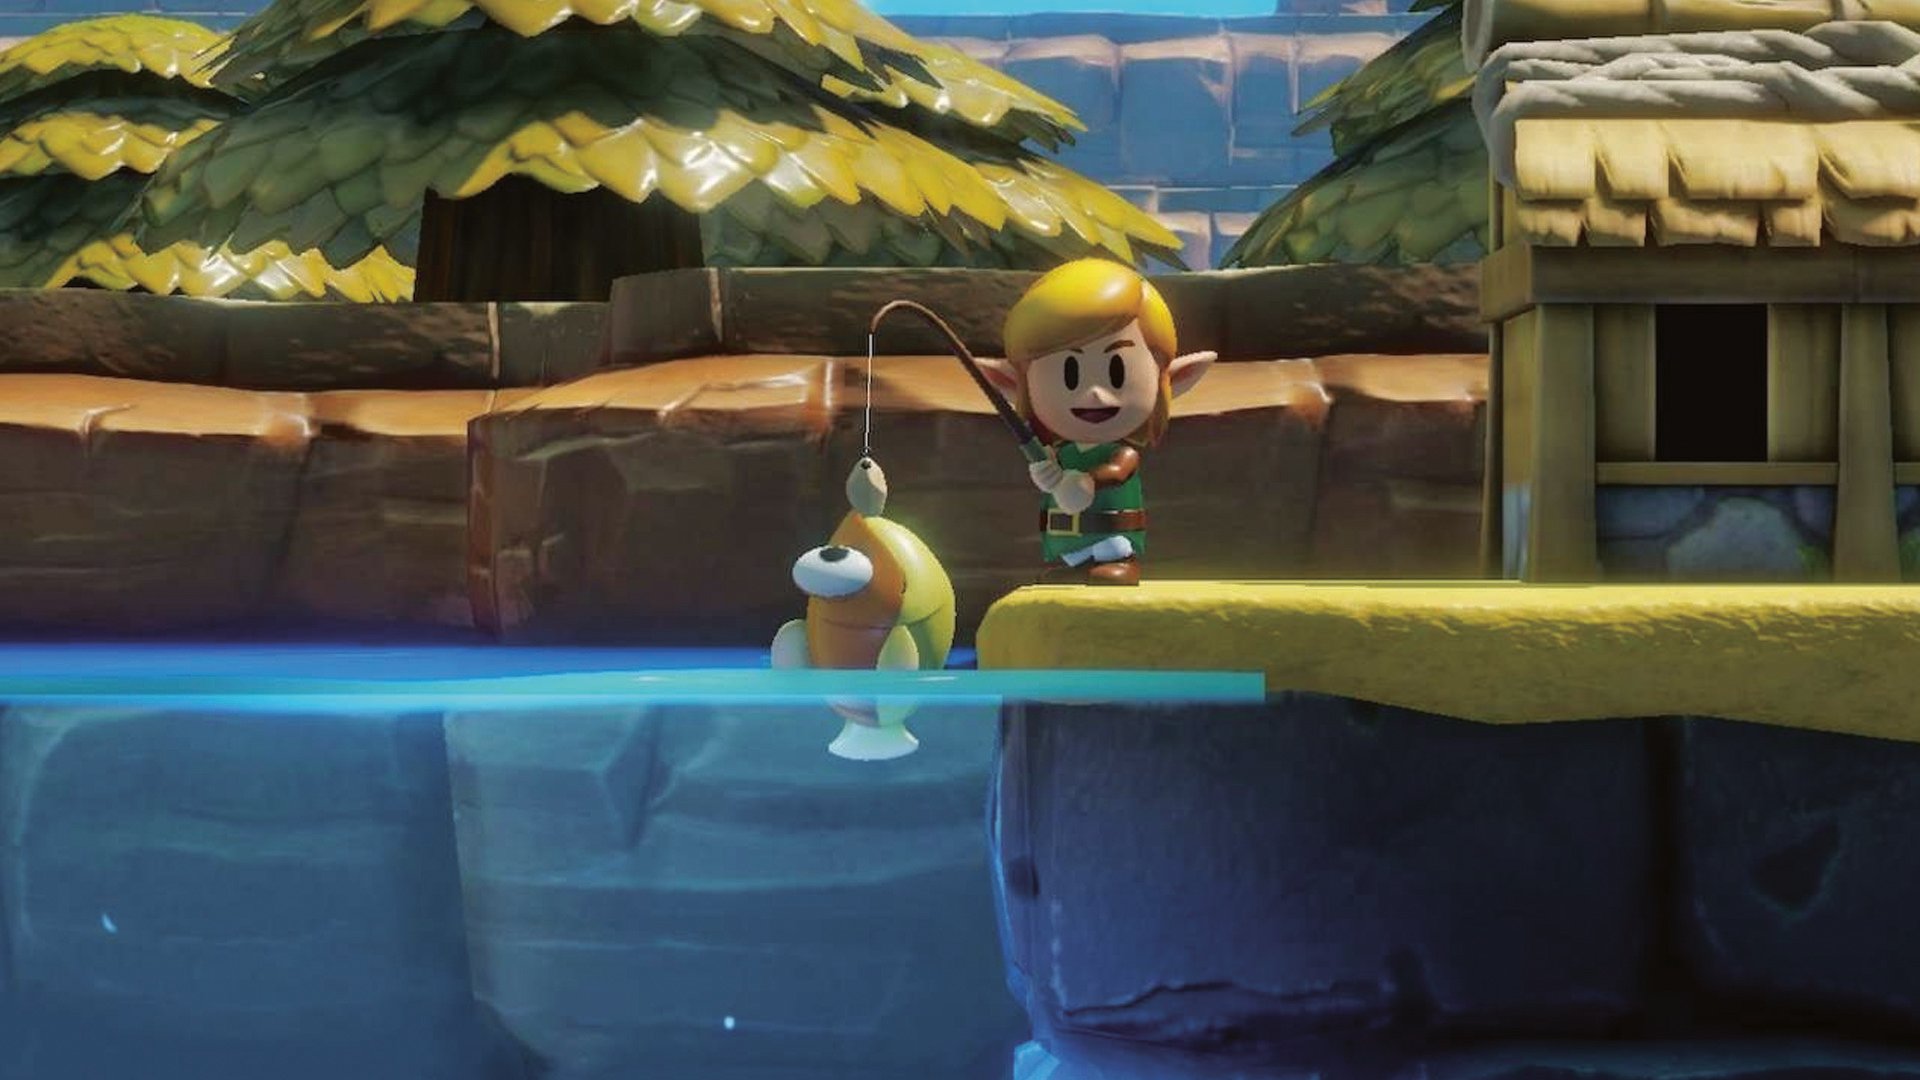 The Legend of Zelda: Link's Awakening Walkthrough - The Legend of